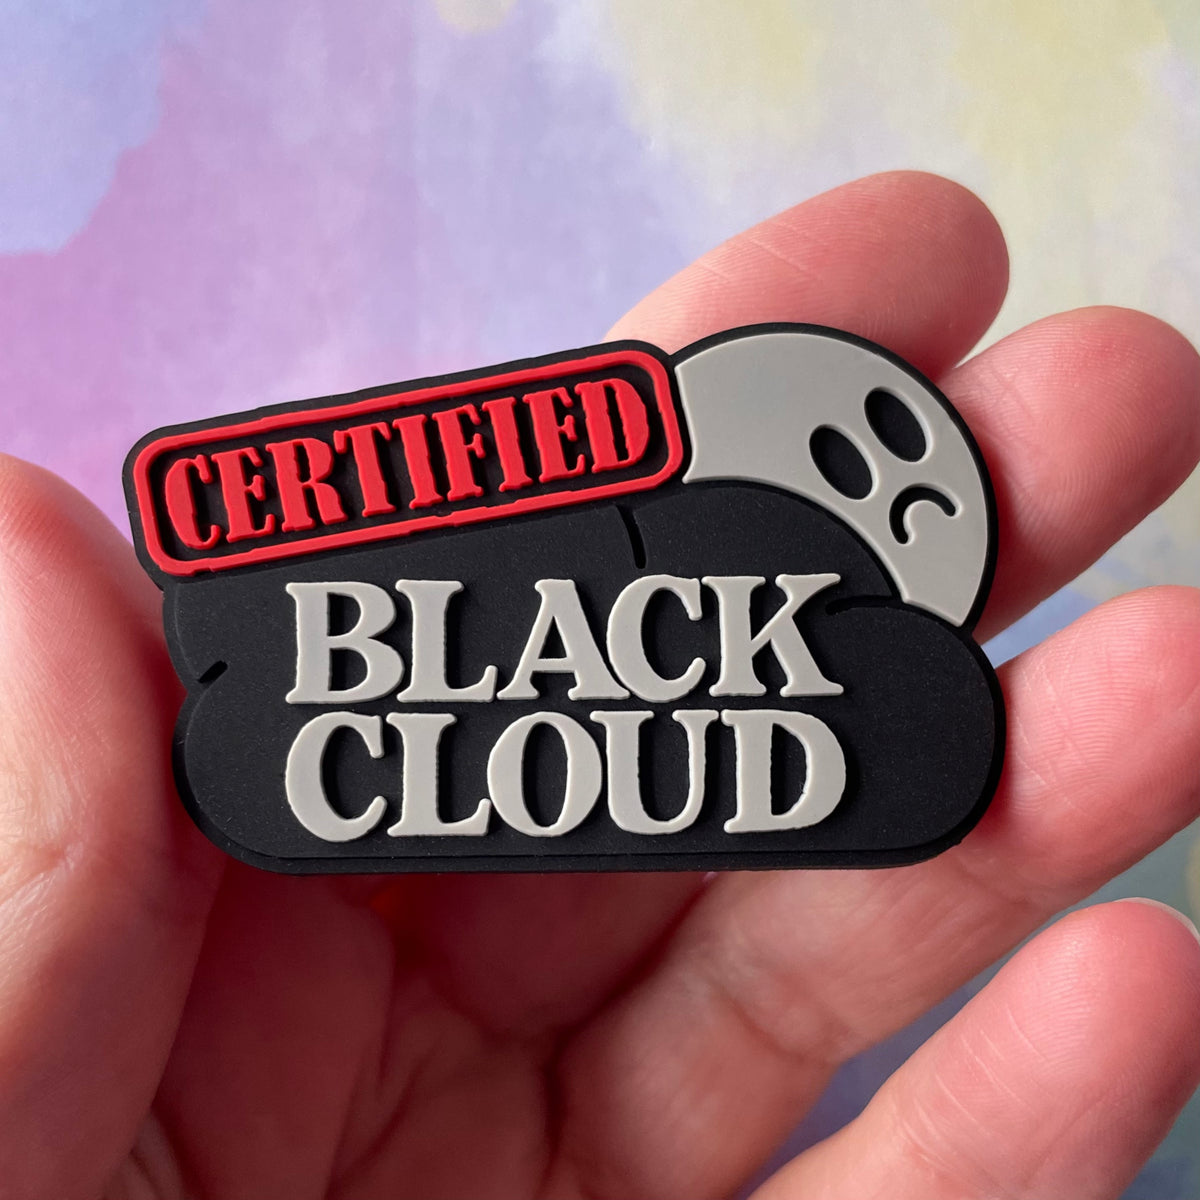 Retractable Badge Reel - Black Cloud Energy - Badge Holder with Swivel Clip / Funny Badge Reel, Certified Black Cloud, Badge Reel Nurse